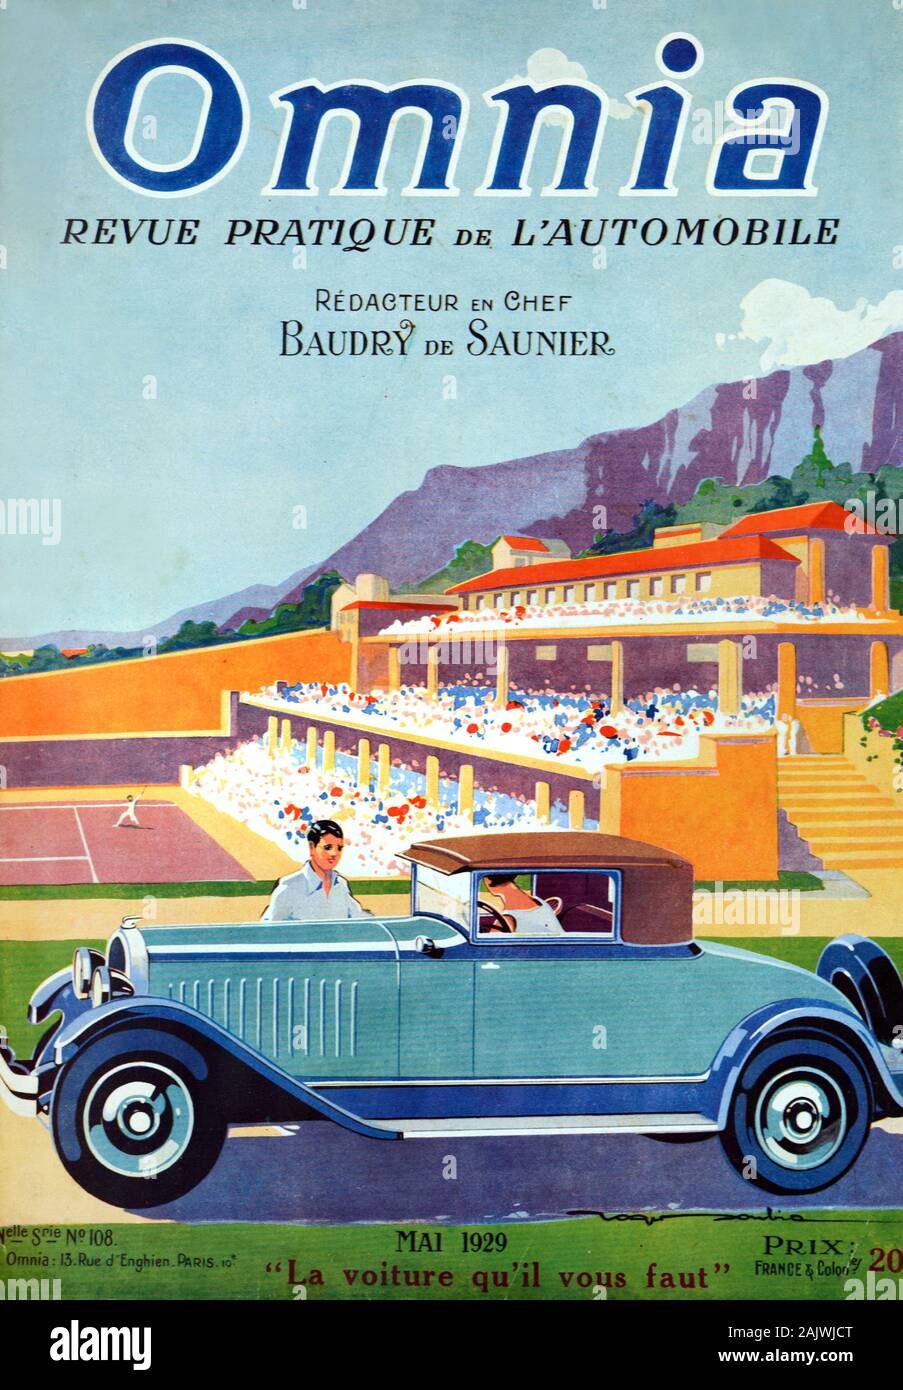 Vintage Car Citroën Type C4 (1928), coupé ou coupé à l'avant du Monte Carlo Country Club et de Tennis, fondée en 1928. Couverture du magazine automobile français début mai 1929 Omnia. Banque D'Images